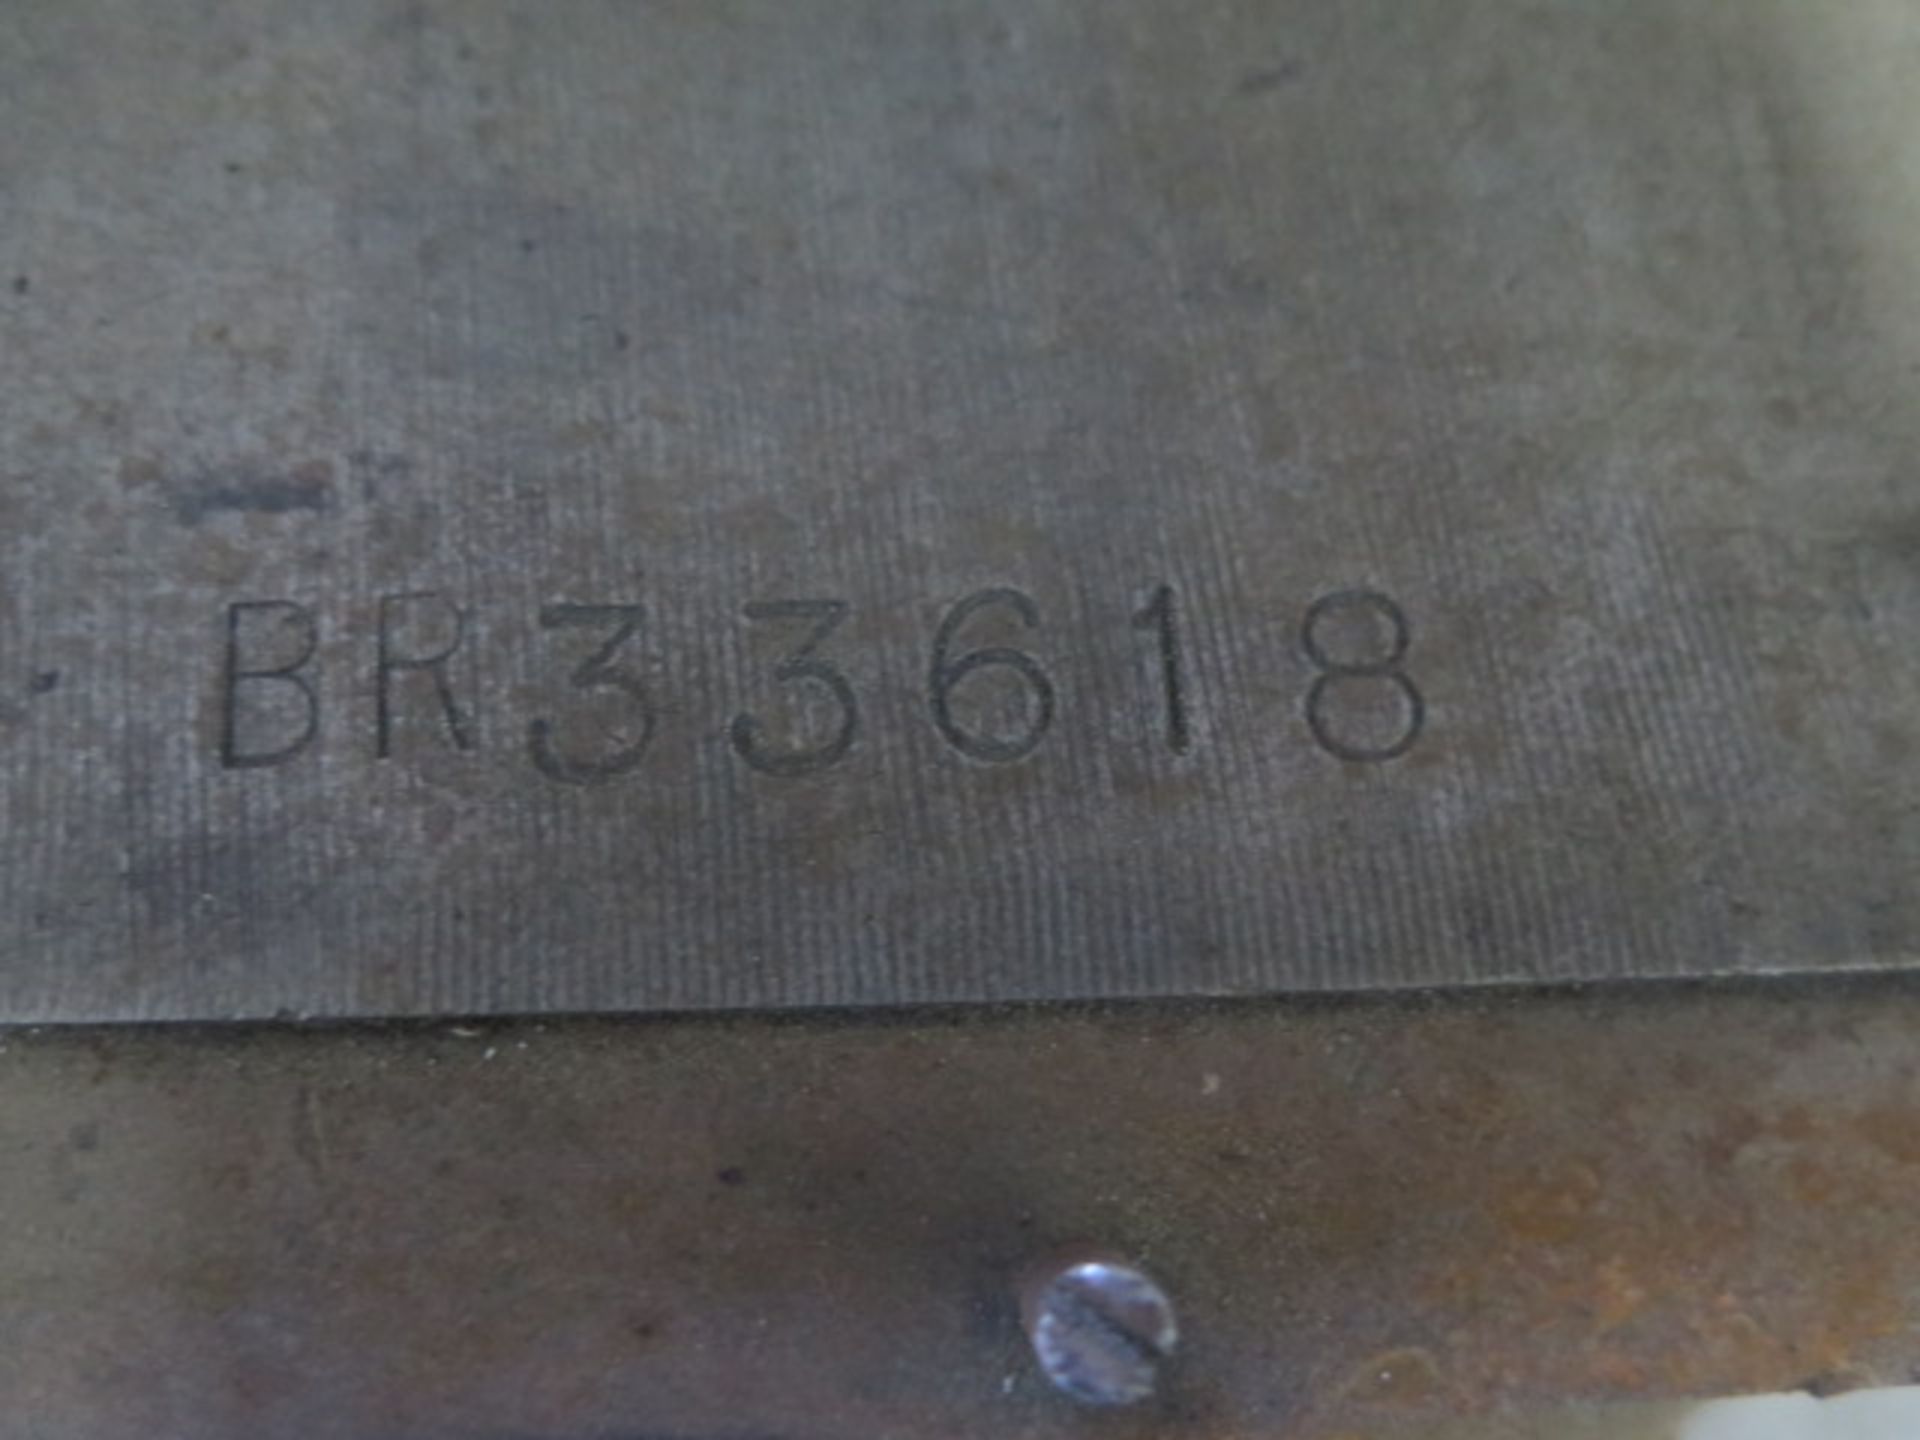 Bridgeport Vertical Mill s/n 33618 w/ 1Hp Motor, 80-2720 RPM, 8-Speeds, 9” x 42” Table, Bridgeport - Image 10 of 10